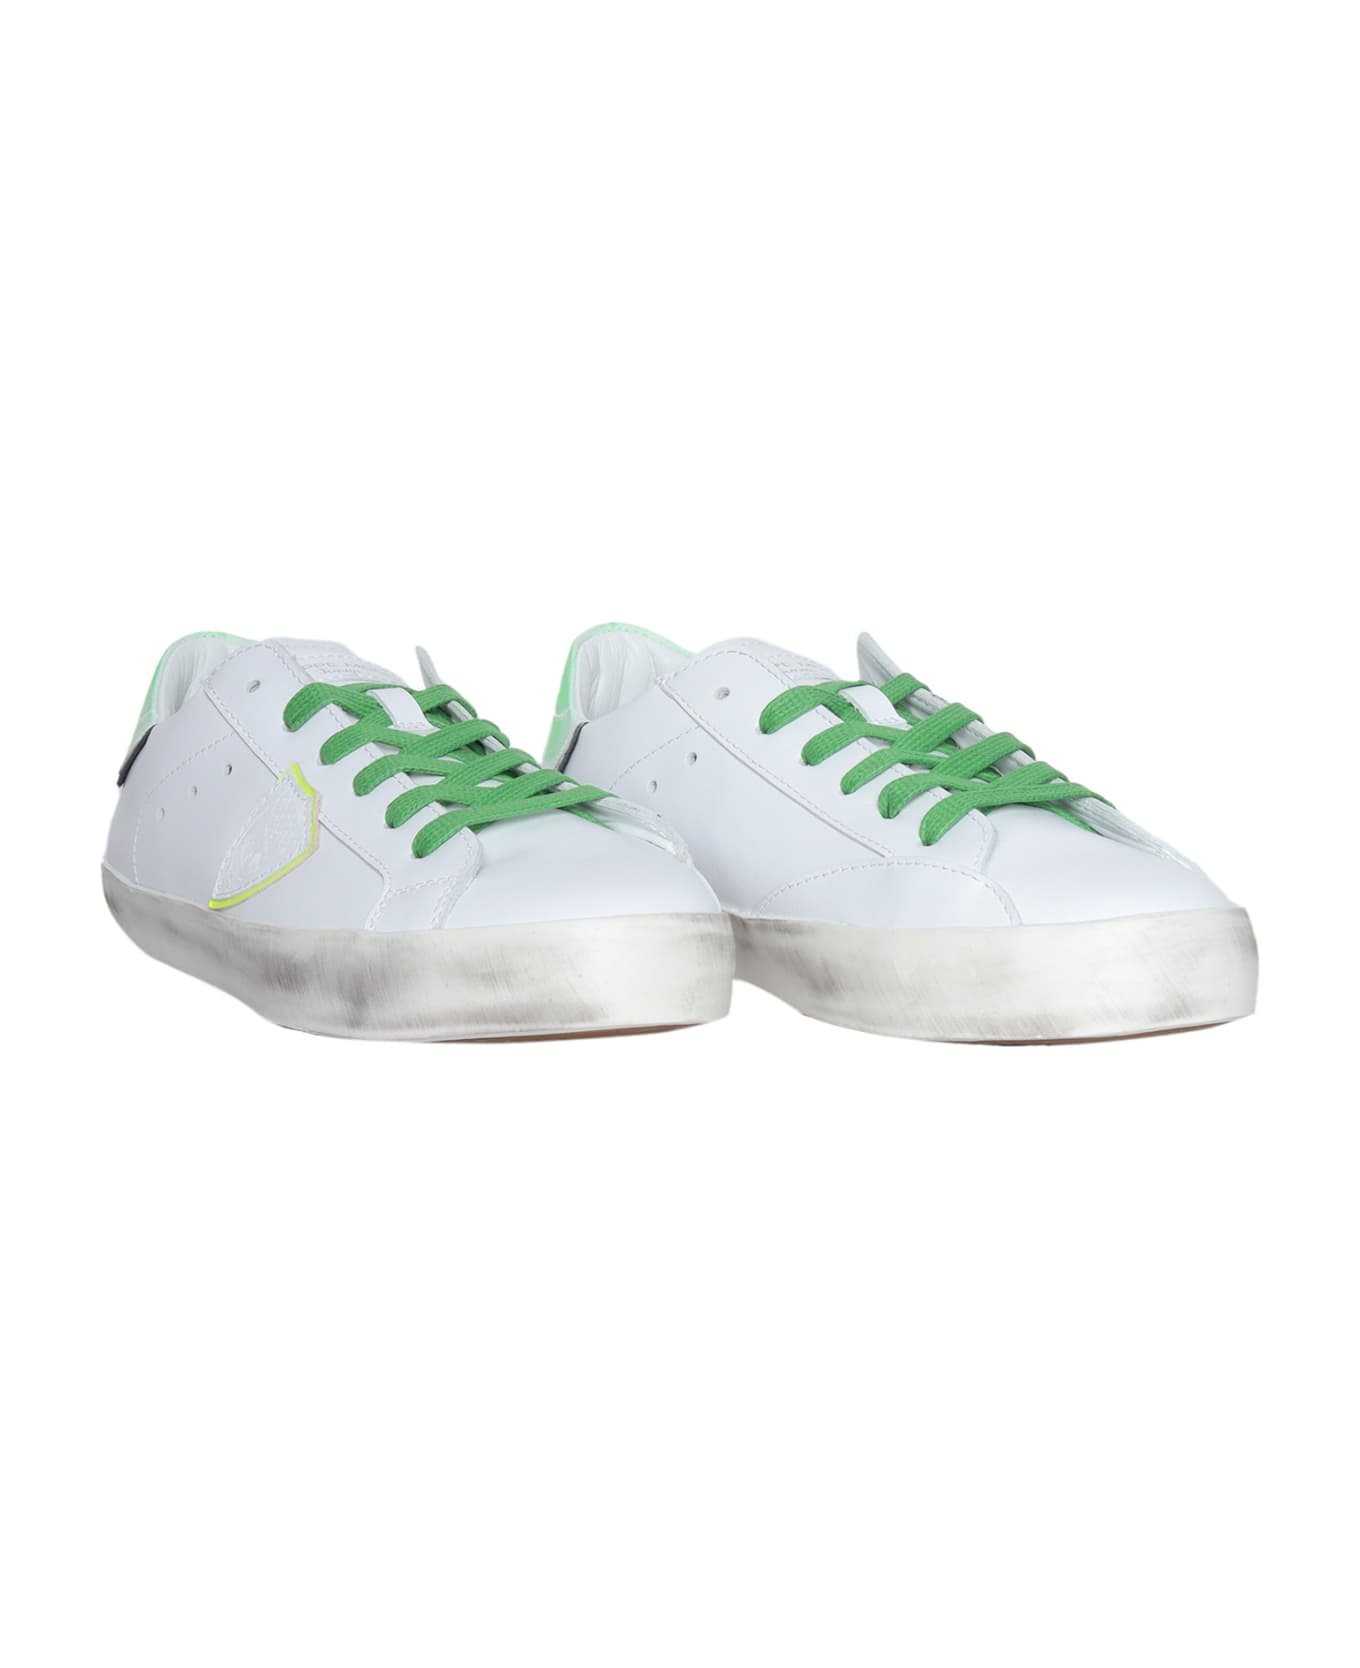 Philippe Model Prsx Decoloree Sneakers - WHITE